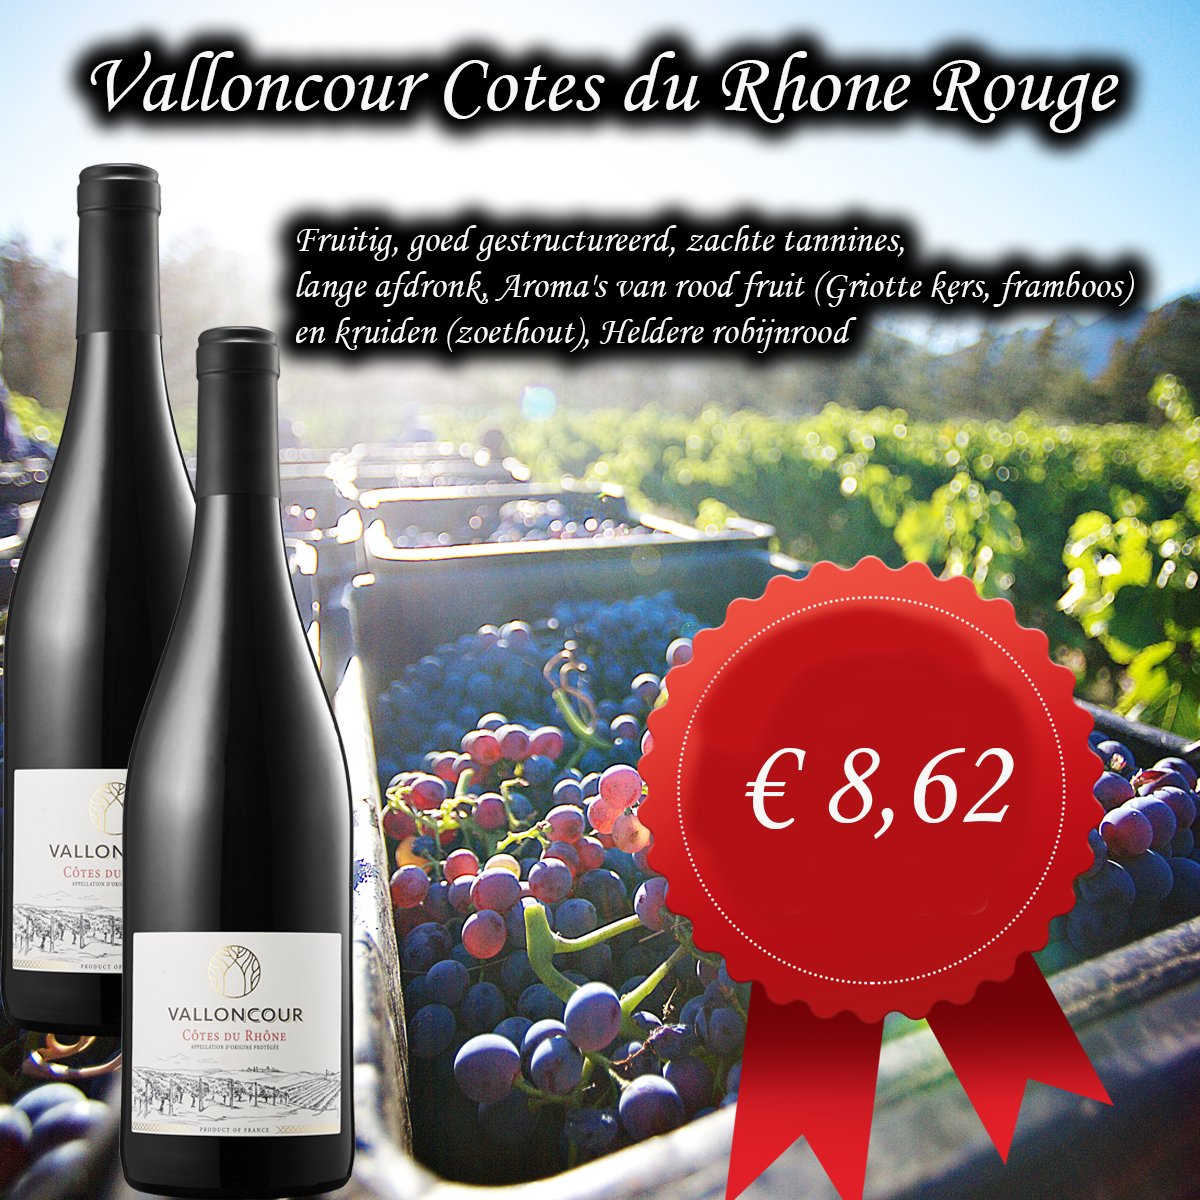 Valloncour Cotes du Rhone Rouge
wijnhandelgrandcave.nl/keuze-menu-wij… #frenchwine #wine #cotesdurhone #rodewijn #wijnhandelgrandcave #yerseke #goes #zeeland #valloncour #wein #vin #wine #vino